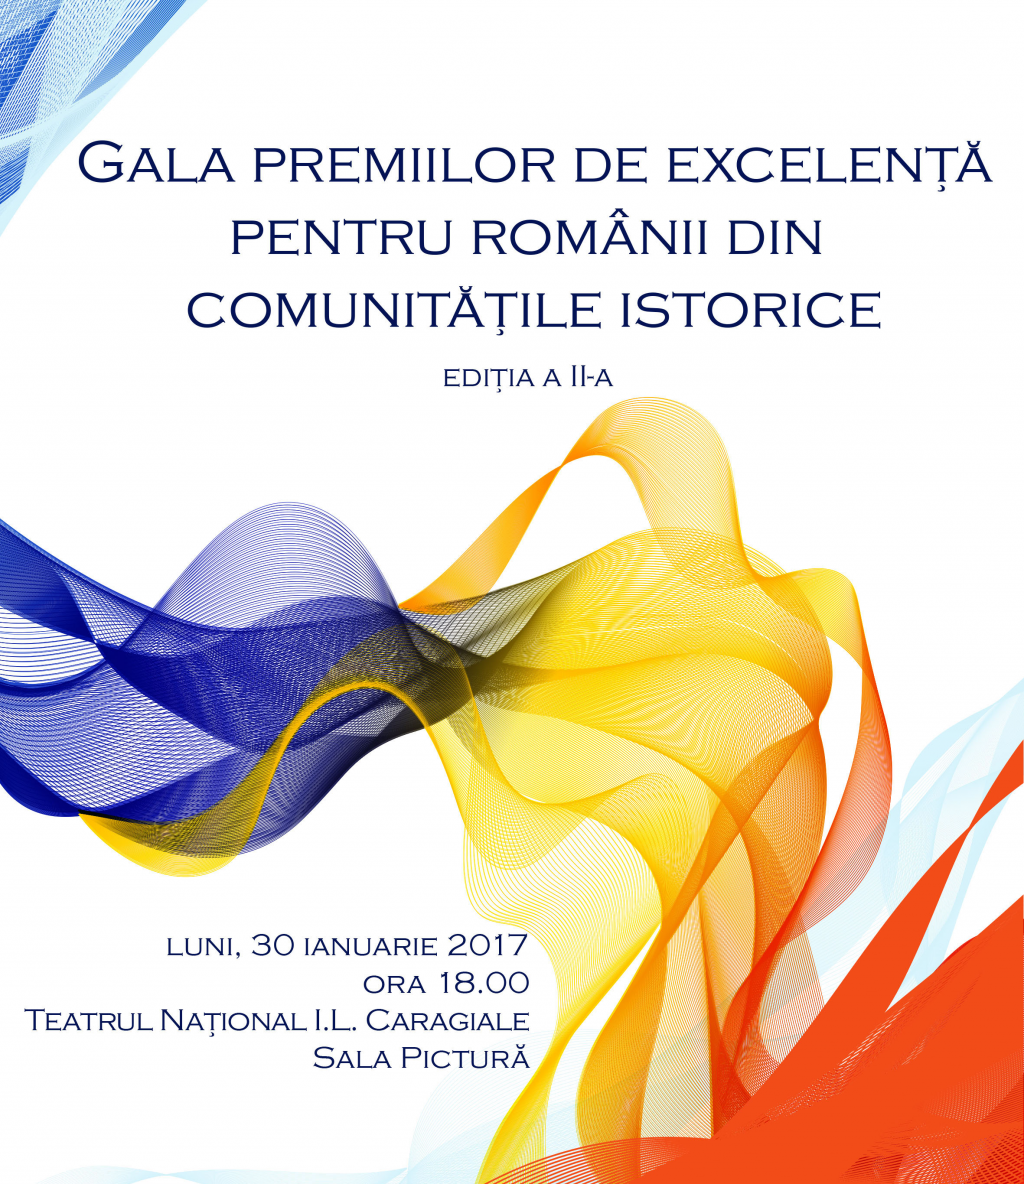 Gala Premiilor de Excelenta pentru Romanii din Comunitatile Istorice, editia a II-a